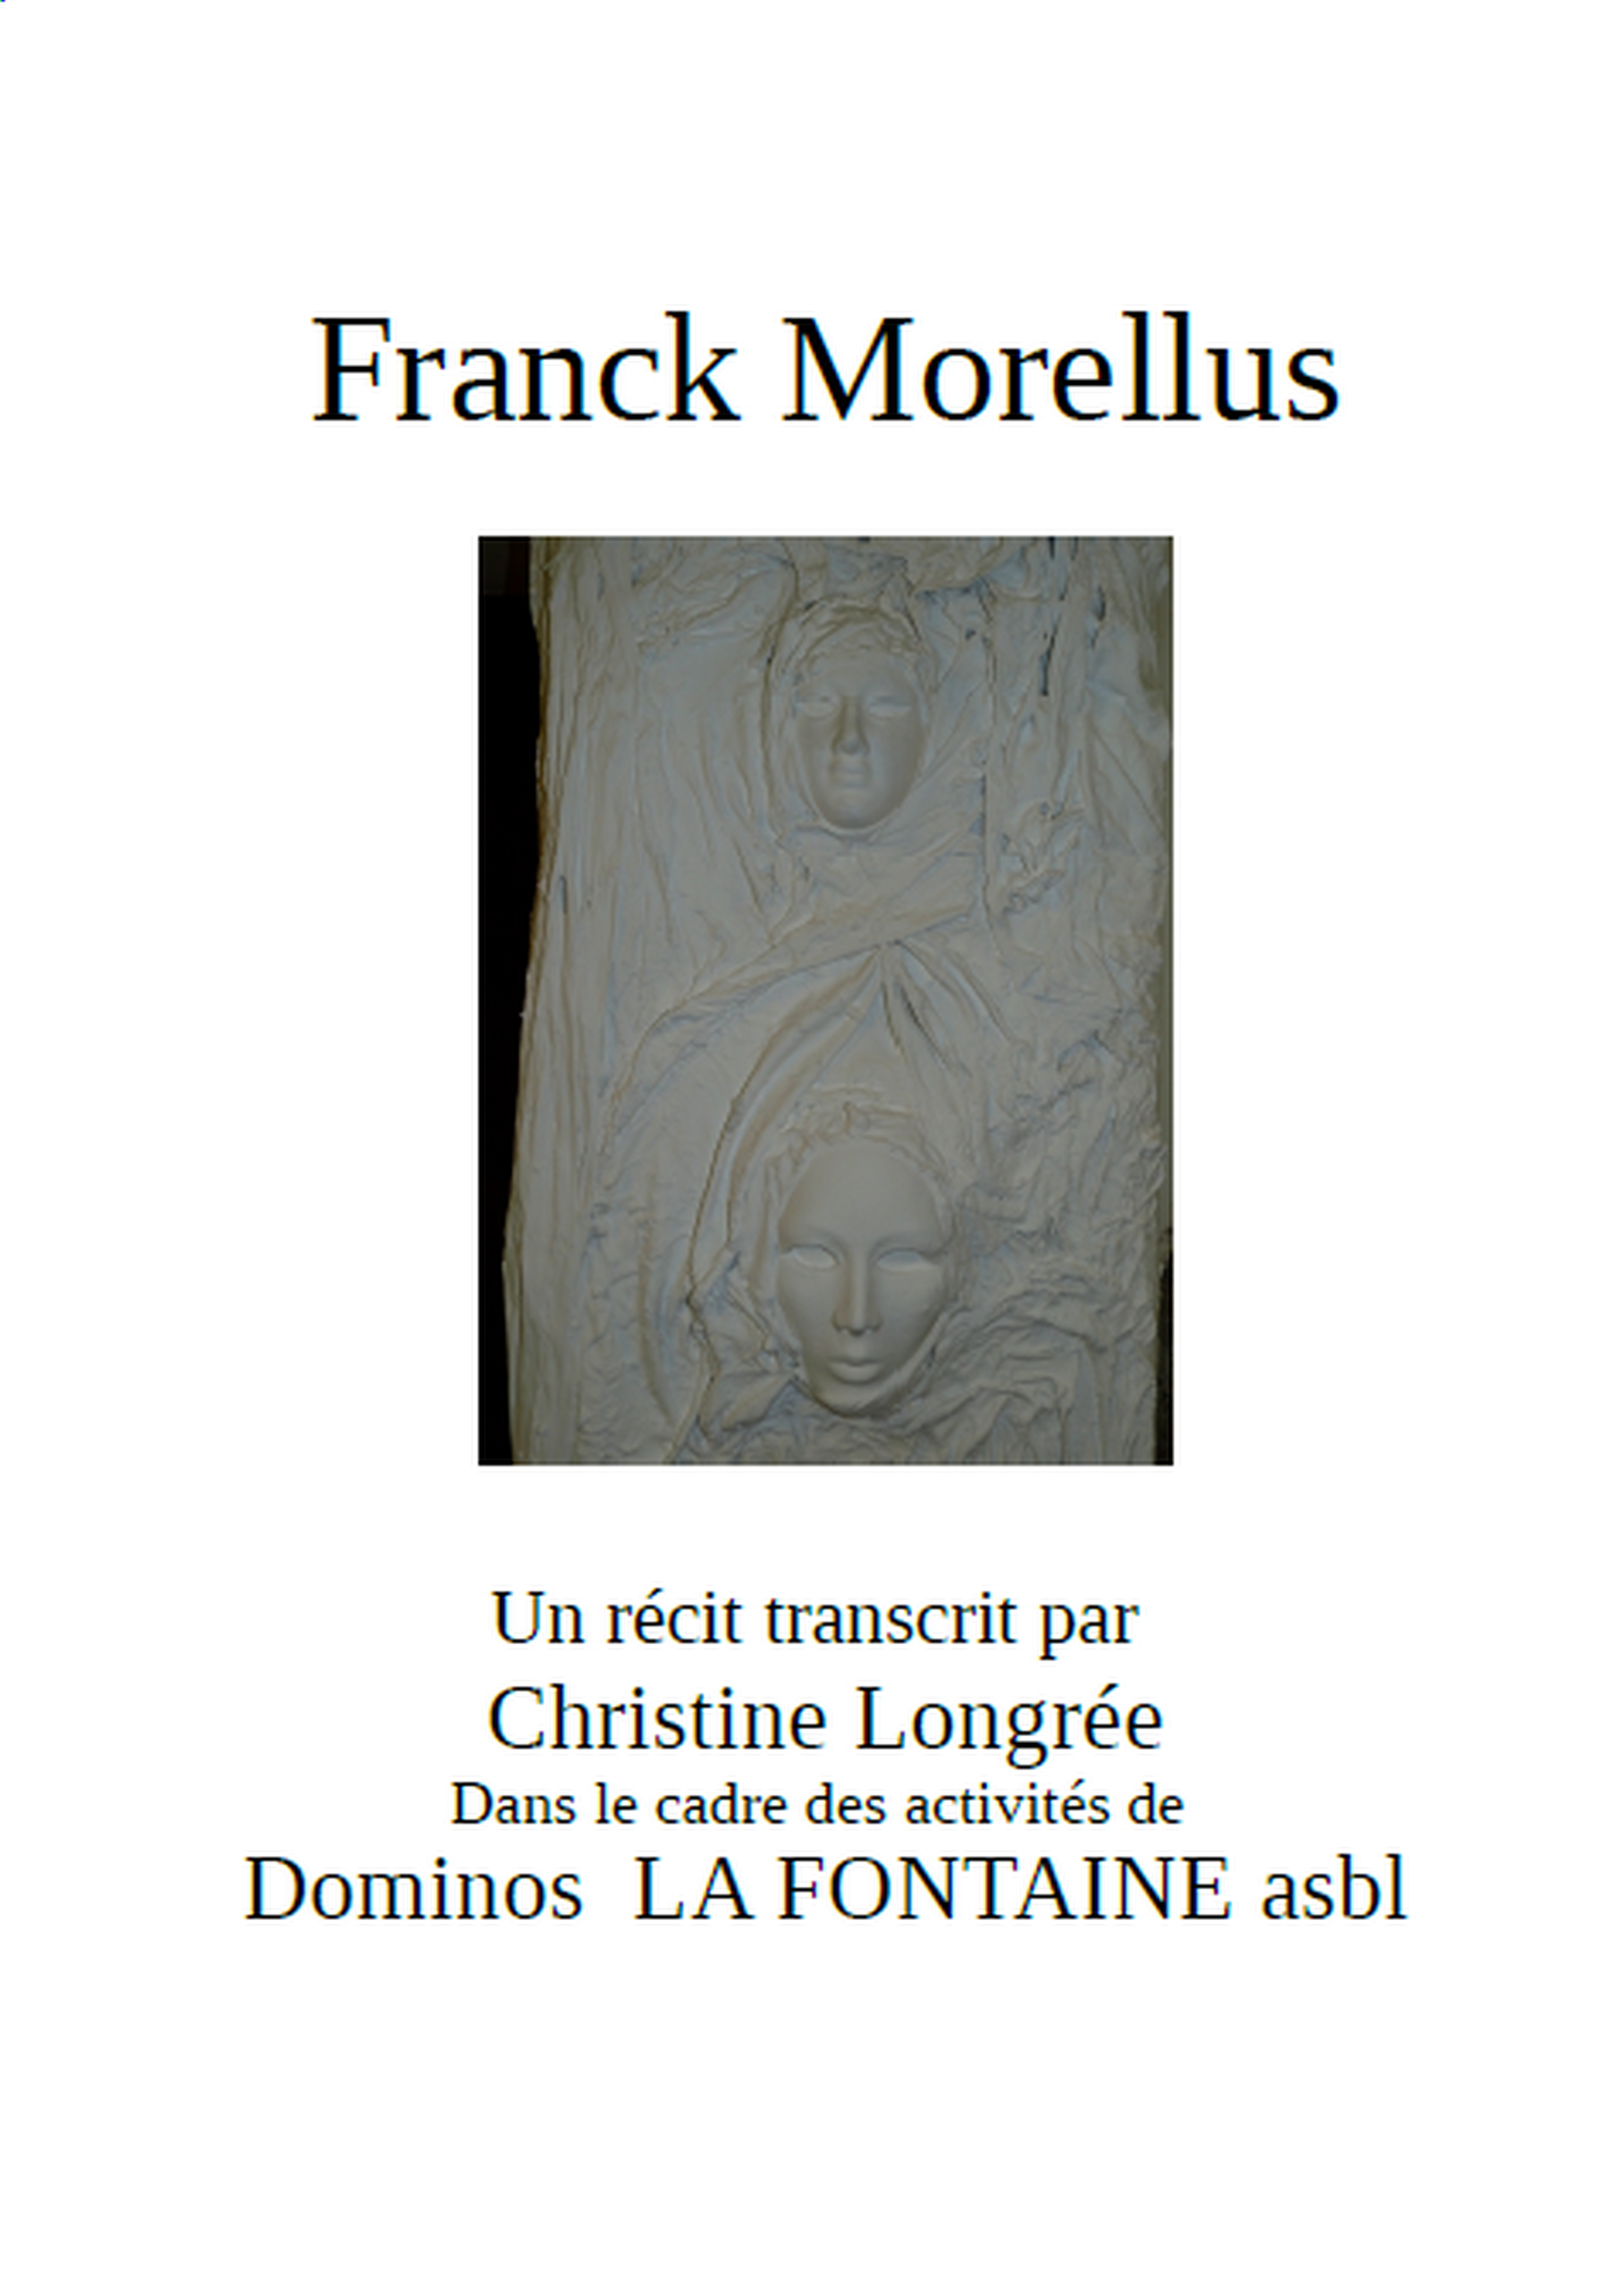 Franck Morellus, un ehistoire de vie